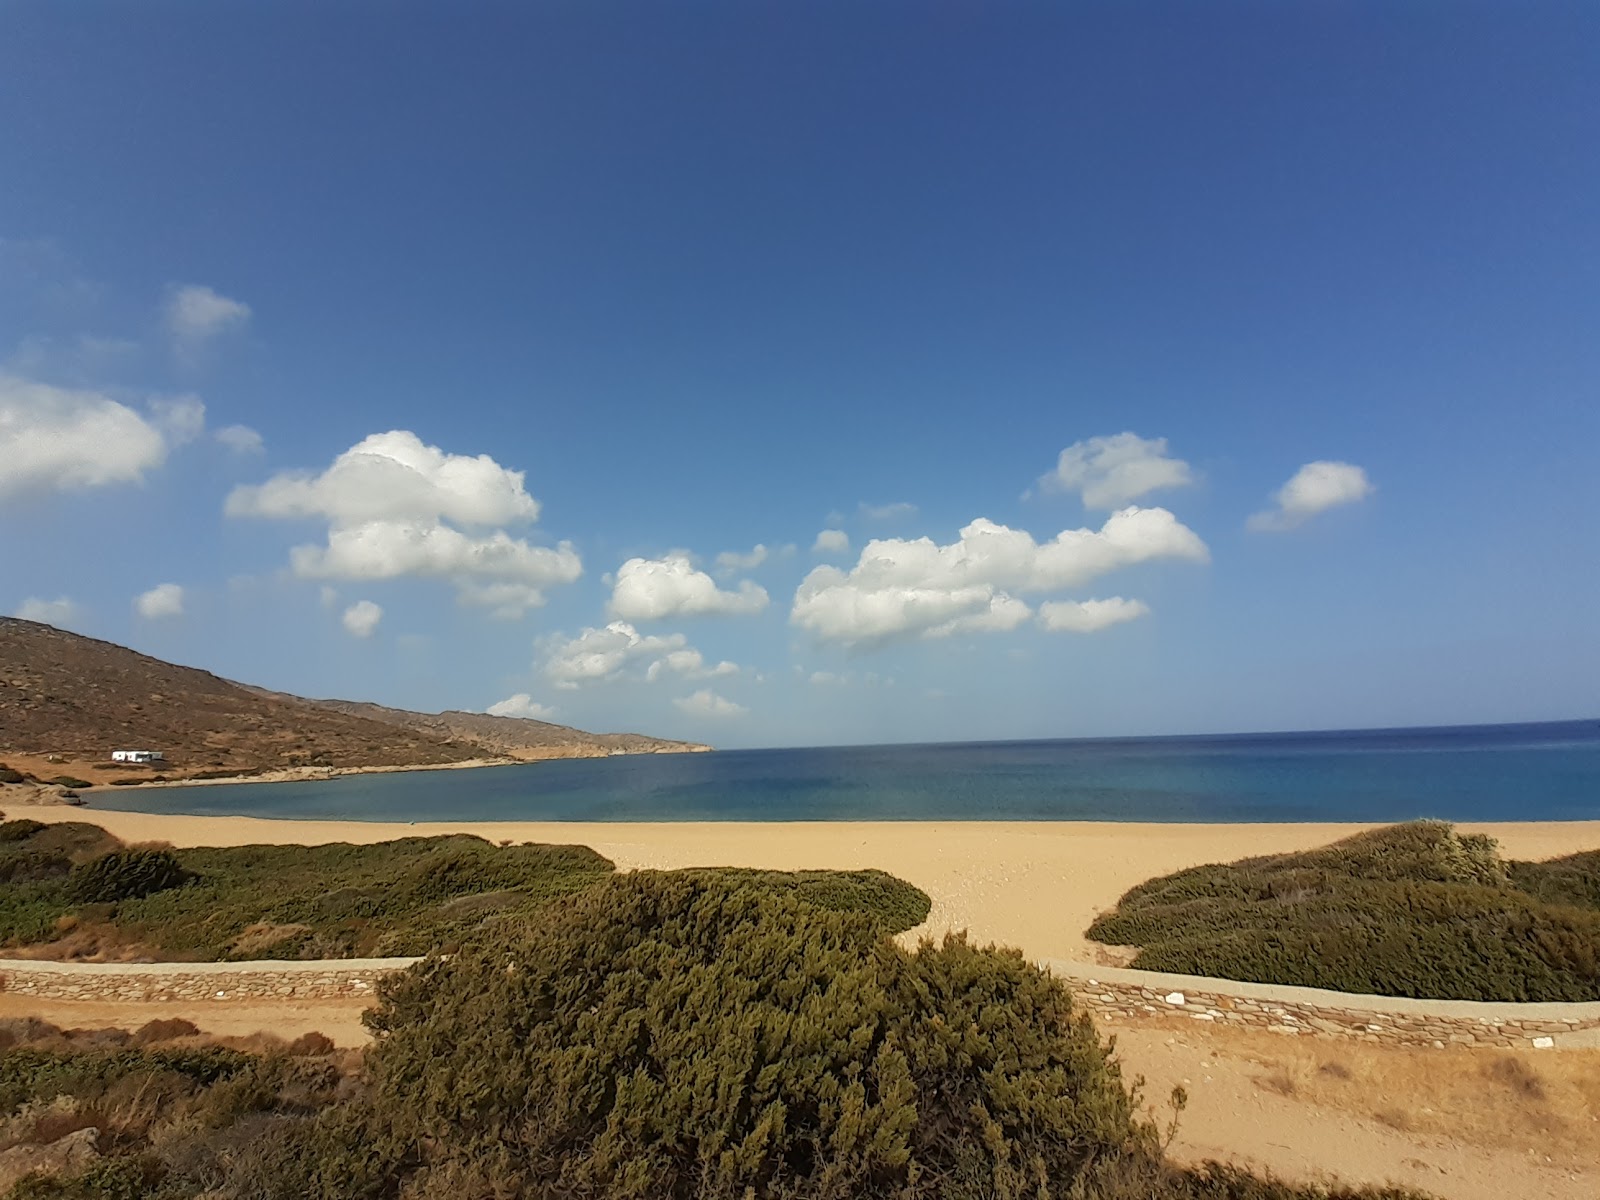 Fotografie cu Paralia Kalamos cu o suprafață de nisip strălucitor